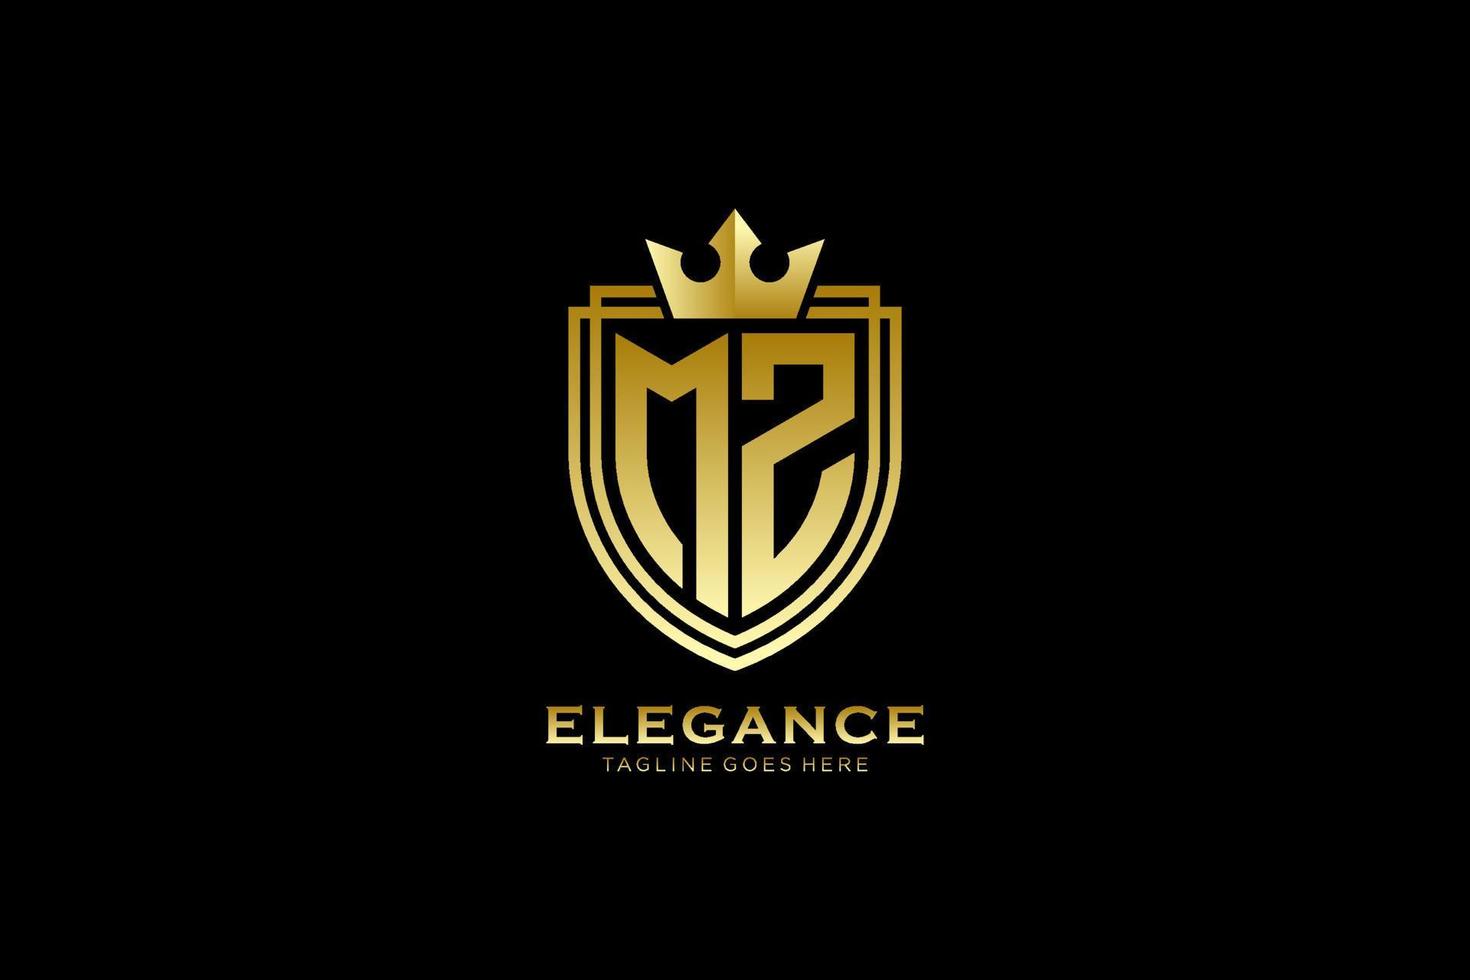 logo monogramme de luxe élégant initial mz ou modèle de badge avec volutes et couronne royale - parfait pour les projets de marque de luxe vecteur